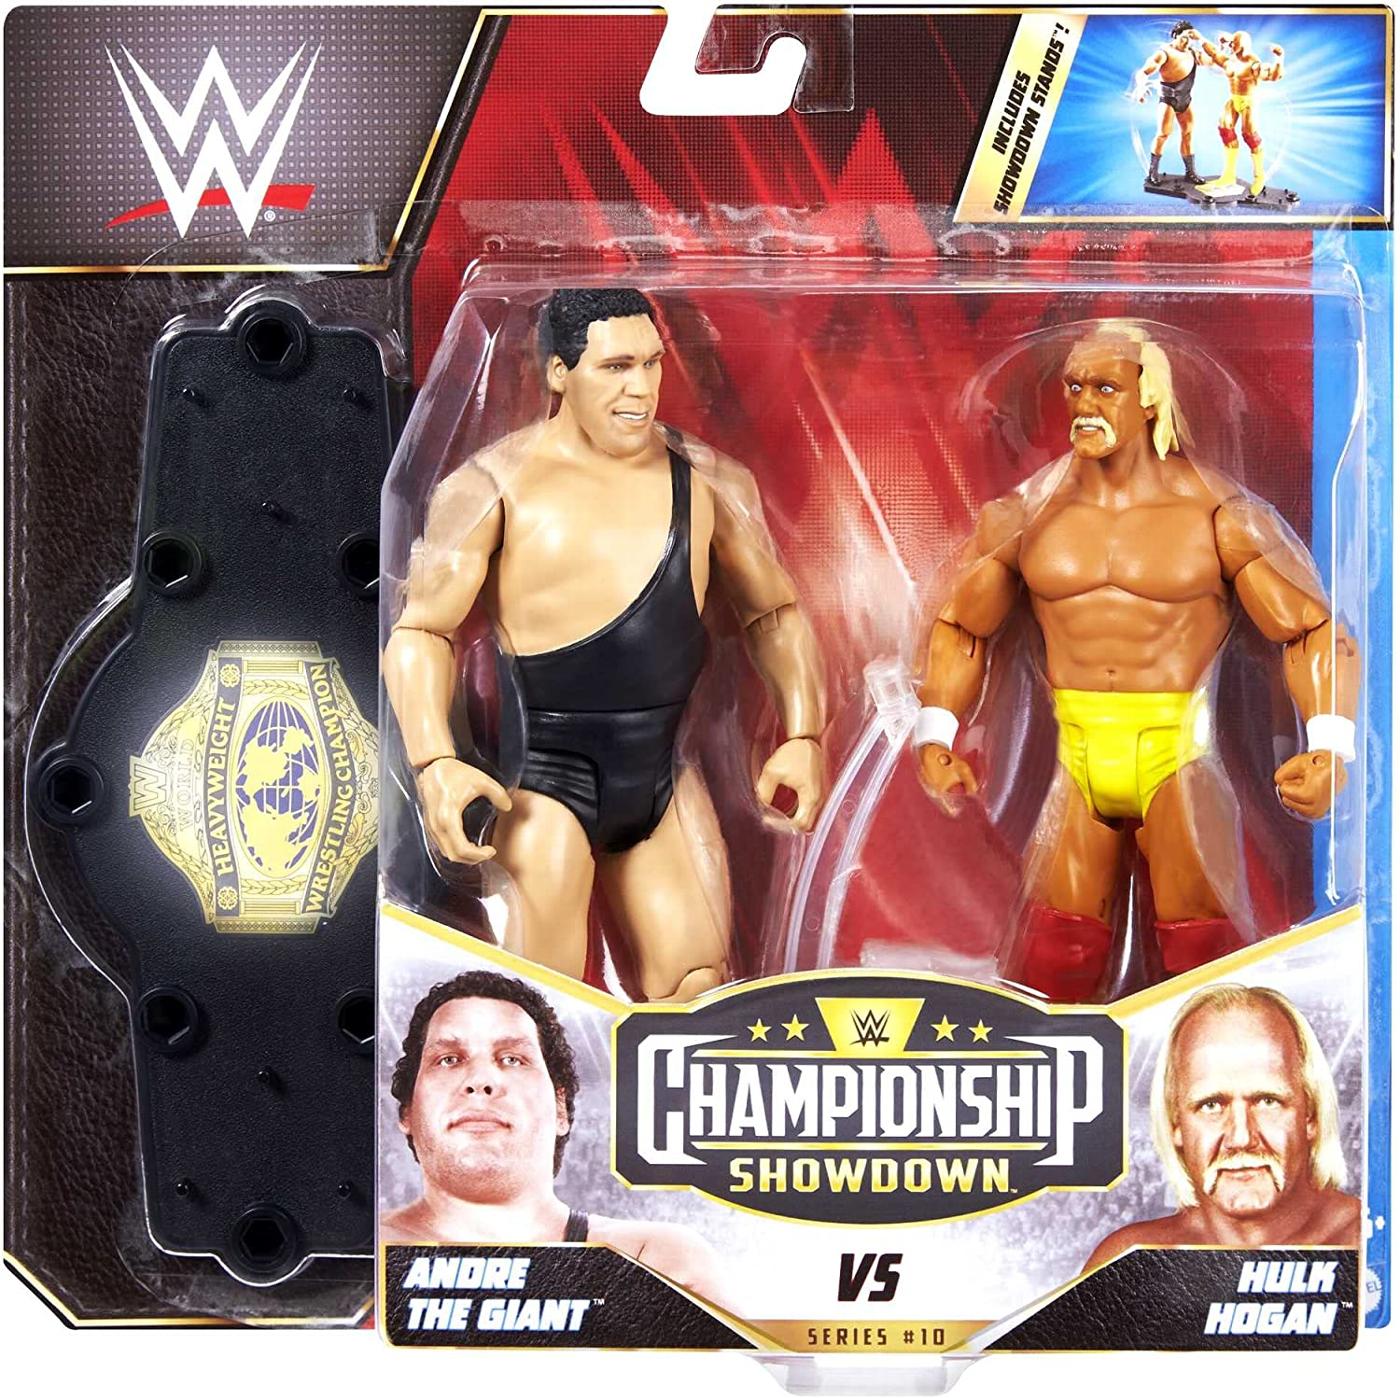 Championship Showdown: Andre the Giant VS Hulk Hogan.